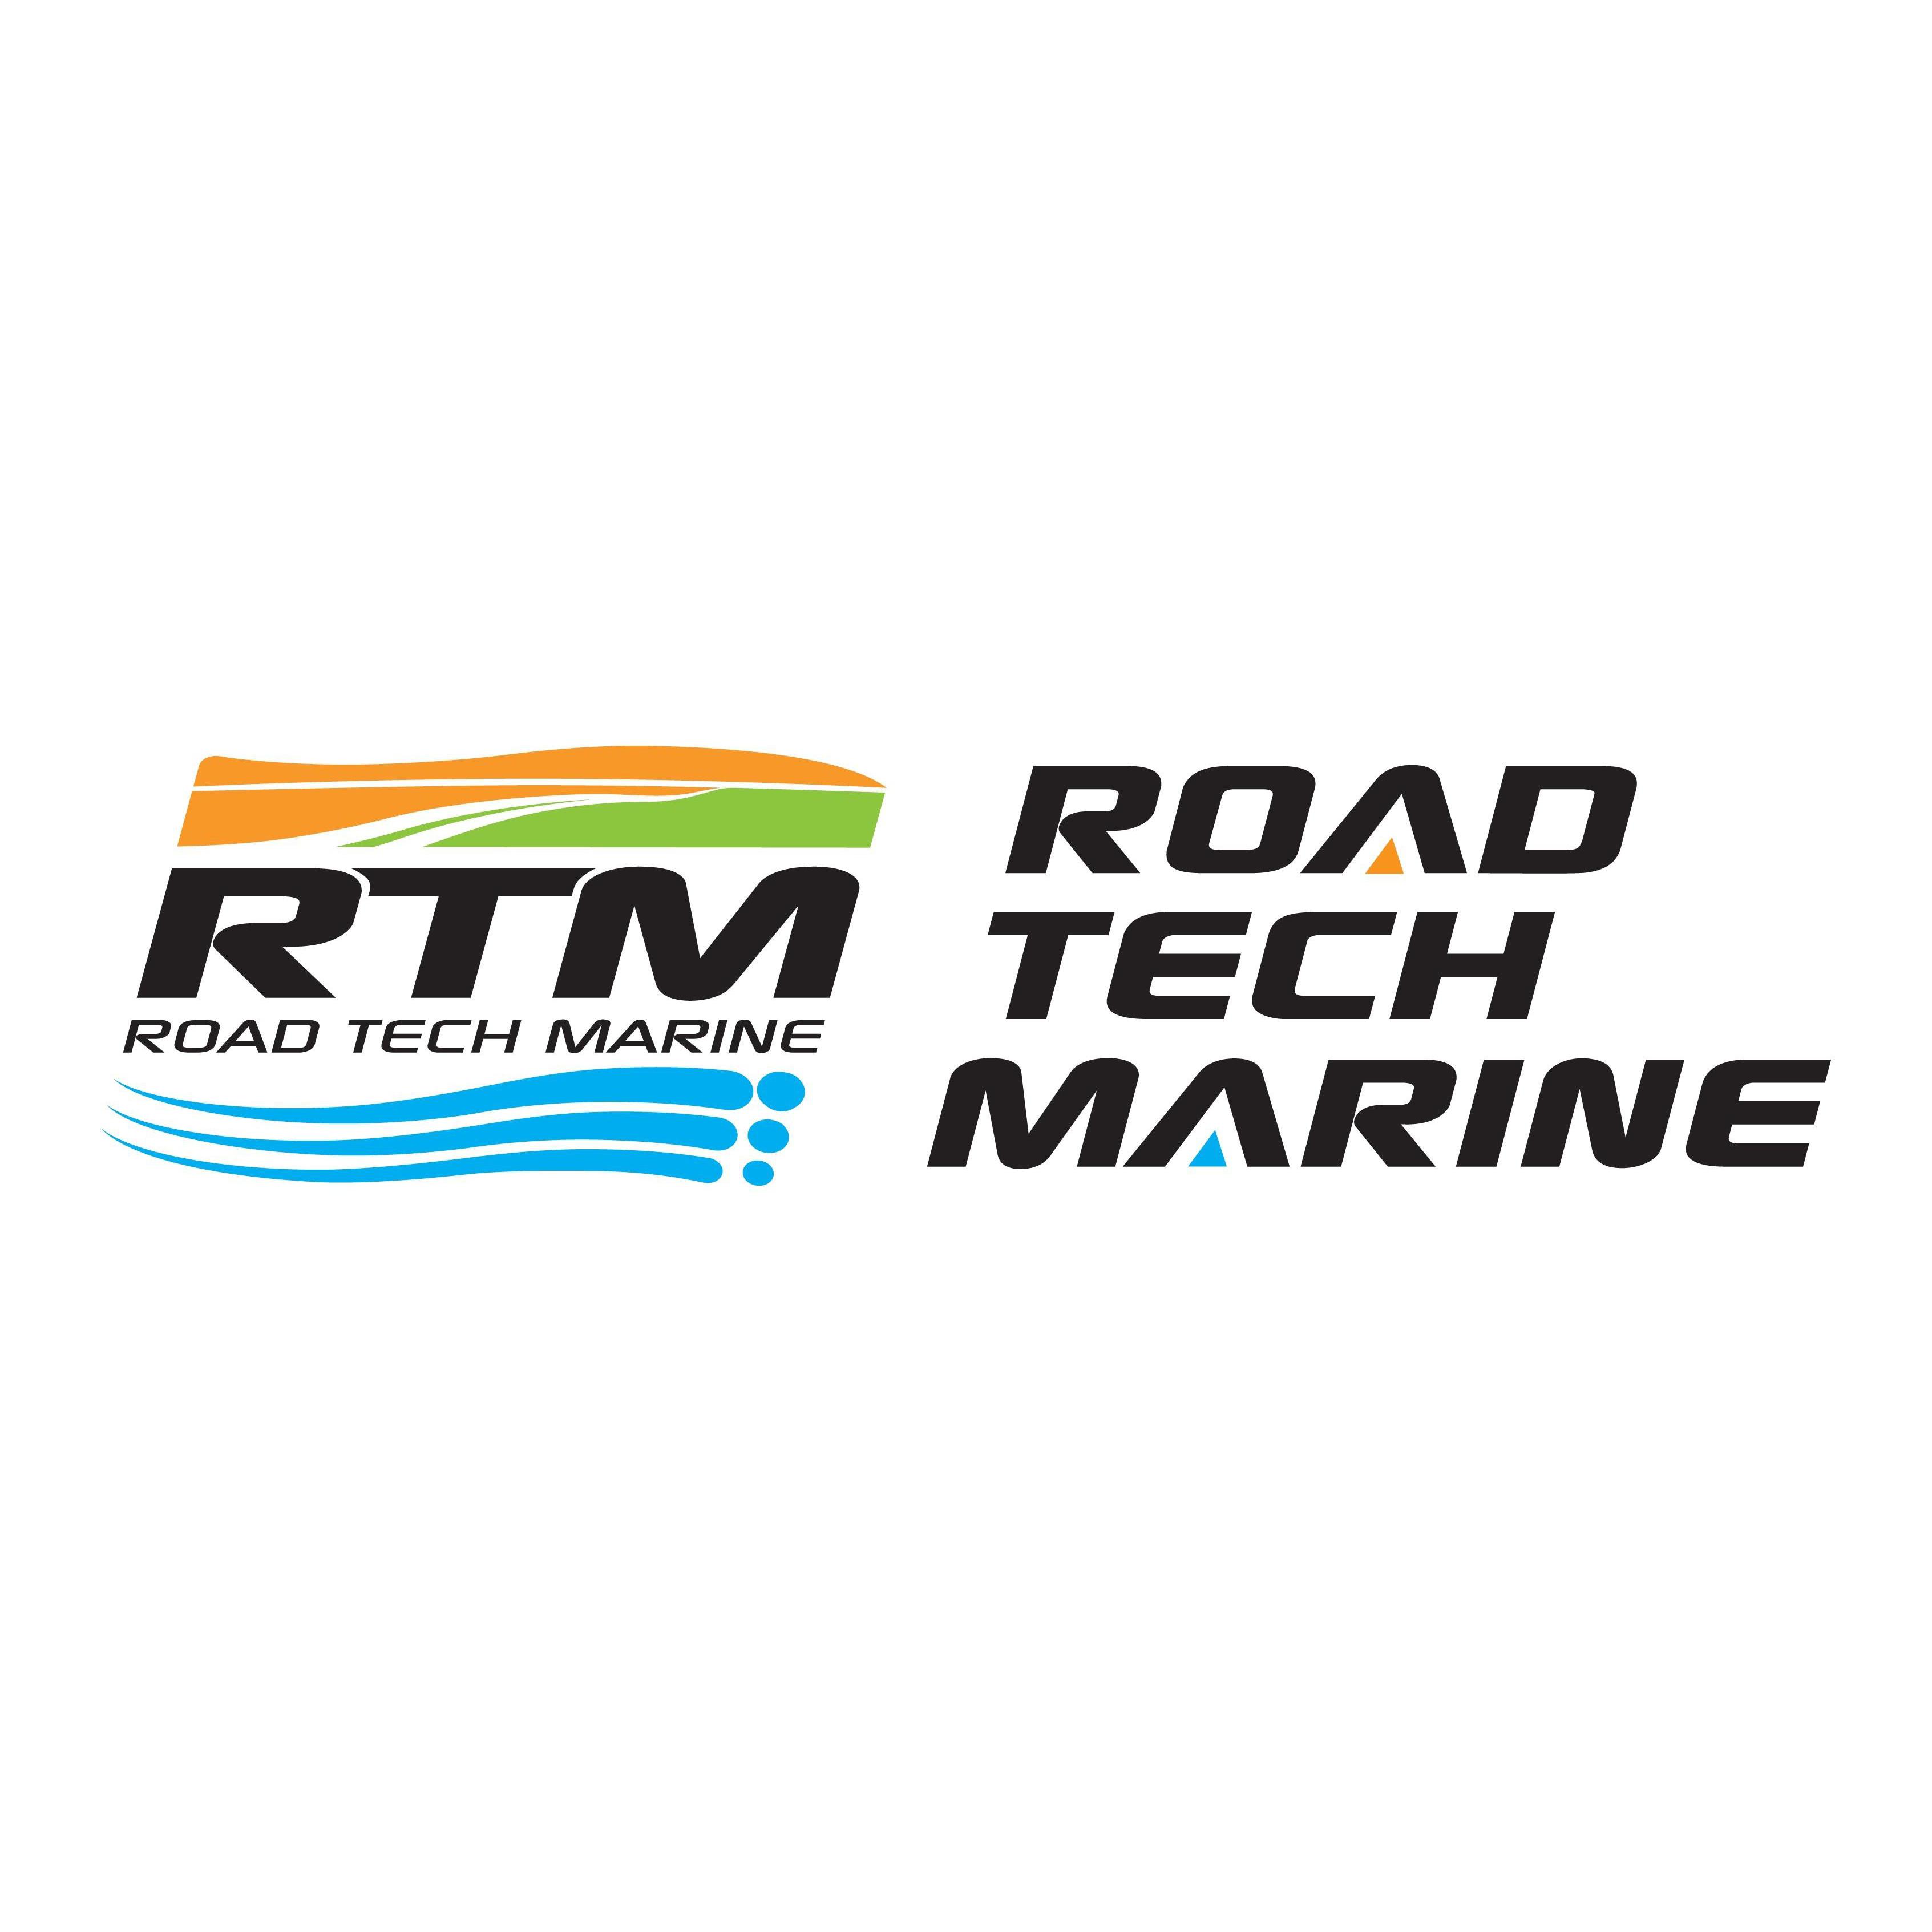 RTM - Road Tech Marine Mandurah Mandurah (08) 9555 9363